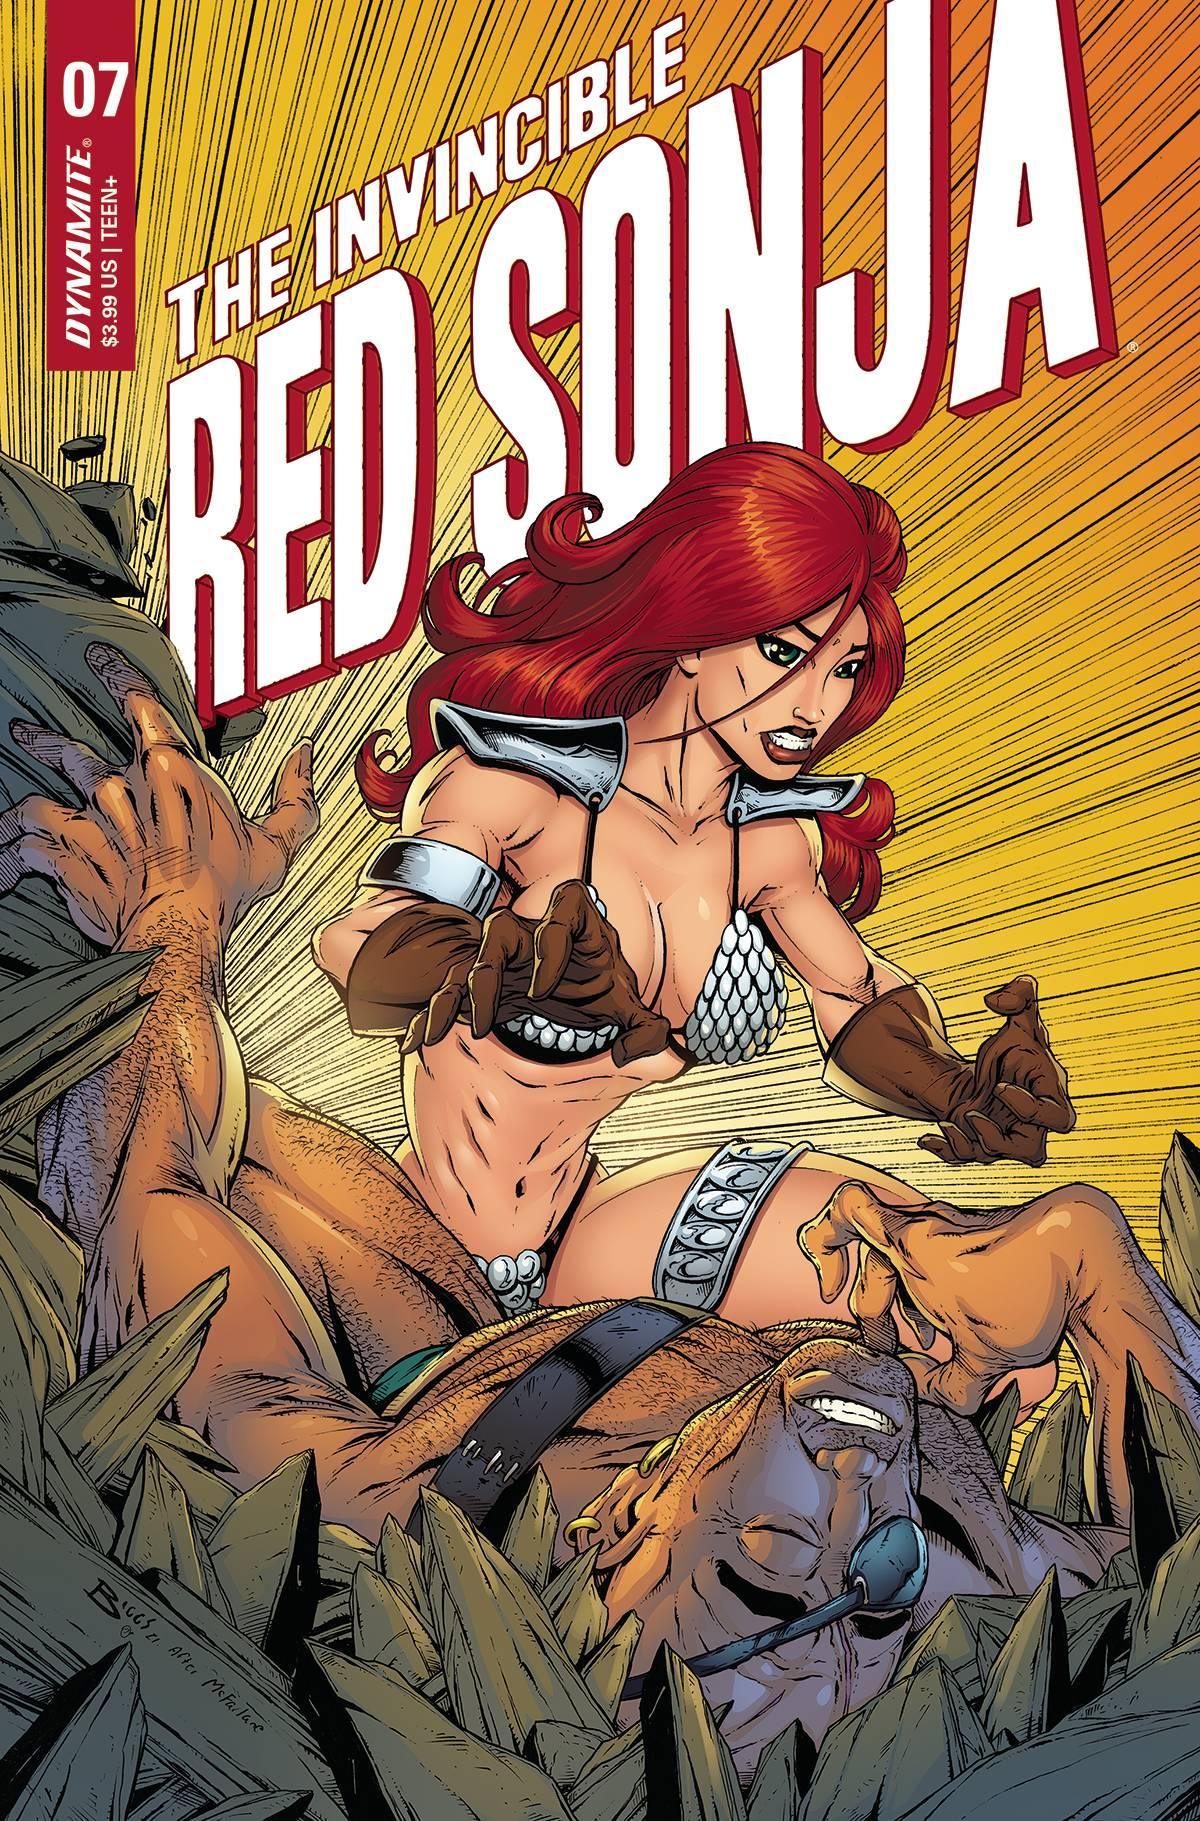 INVINCIBLE RED SONJA #7 CVR N FOC MCFARLANE HOMAGE BIGGS ORI - Kings Comics